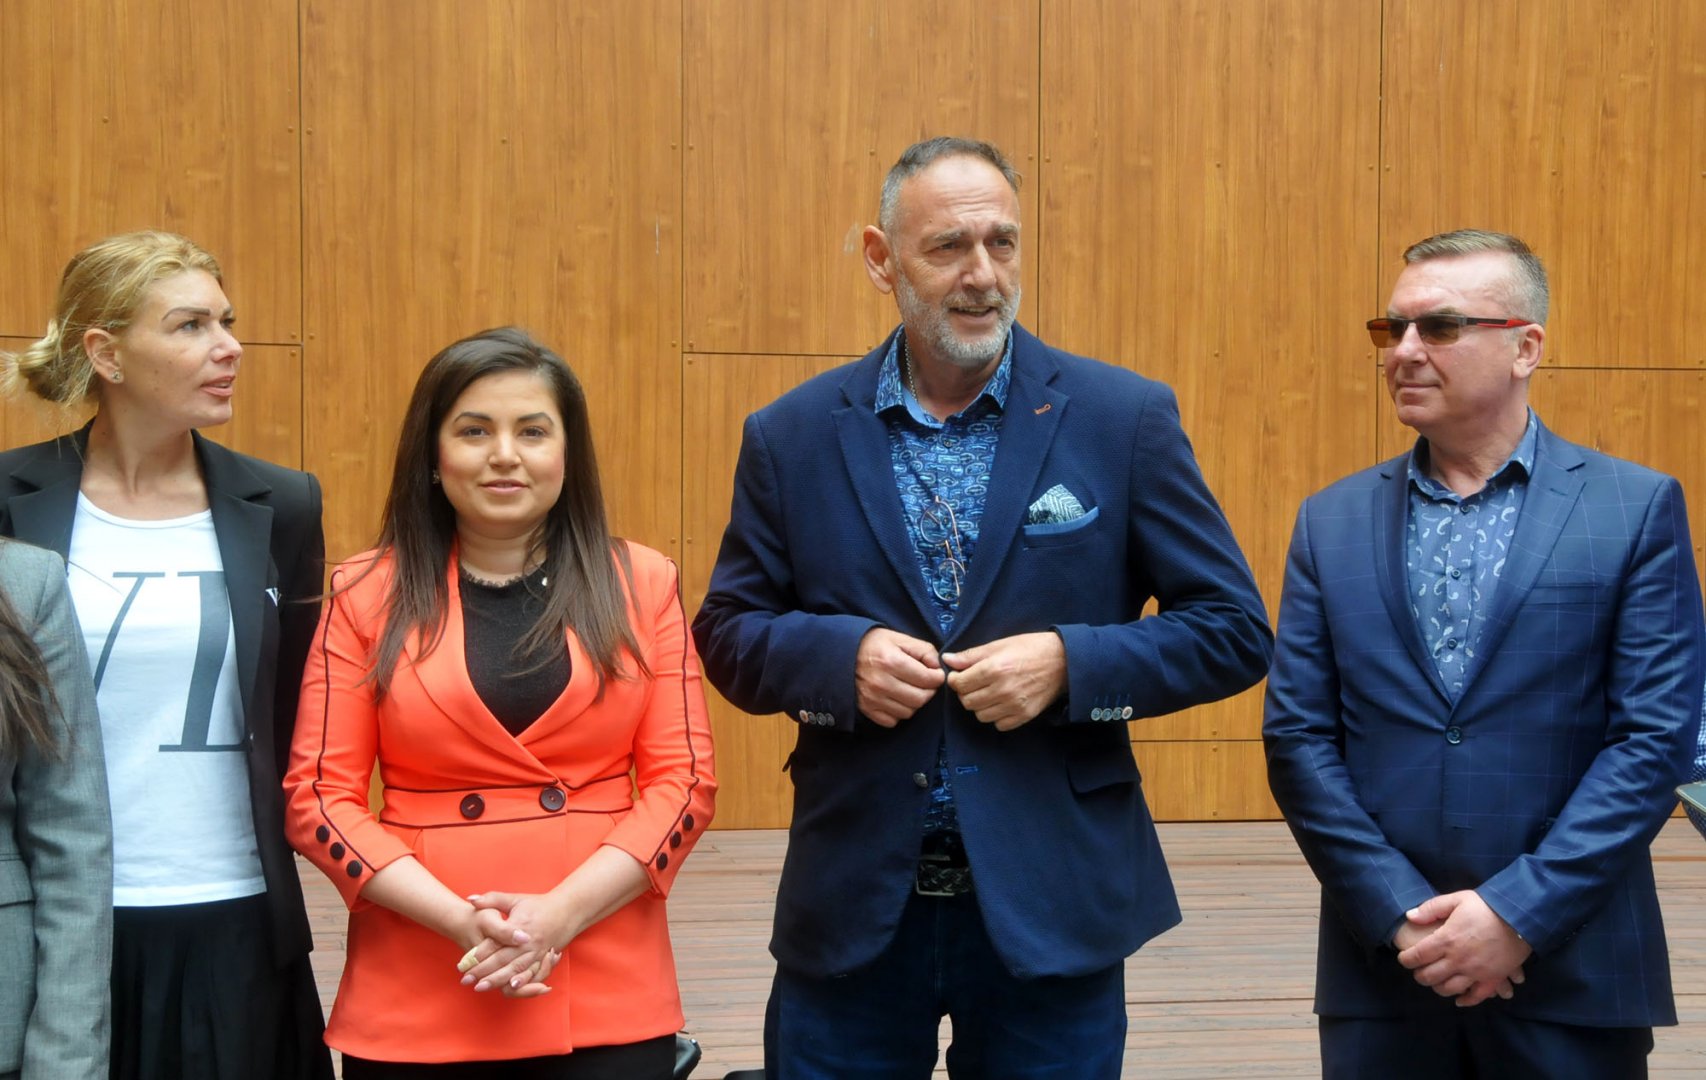 Най-голямата група в следващия парламент ще е на ГЕРБ, прогнозира водачът на листата на коалиция ГЕРБ - СДС Любен Дилов - син (вторият отдясно наляво). Снимки Черноморие-бг